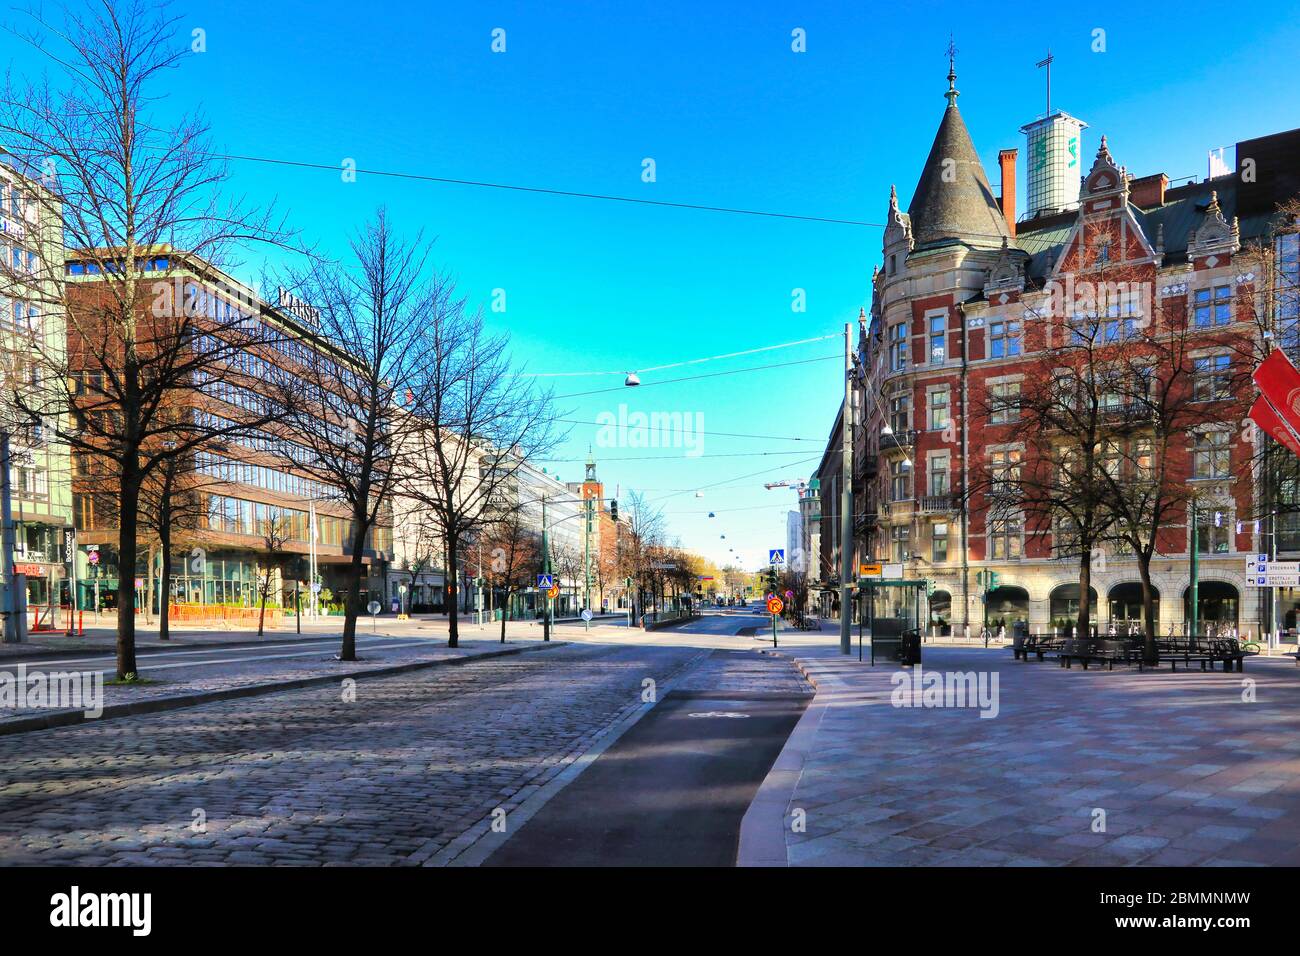 Helsinki, Finlandia. 10 maggio 2020, Giornata della Madre. Normalmente Mannerheimintie Street a Helsinki è molto tranquilla durante la pandemia di coronavirus. Foto Stock